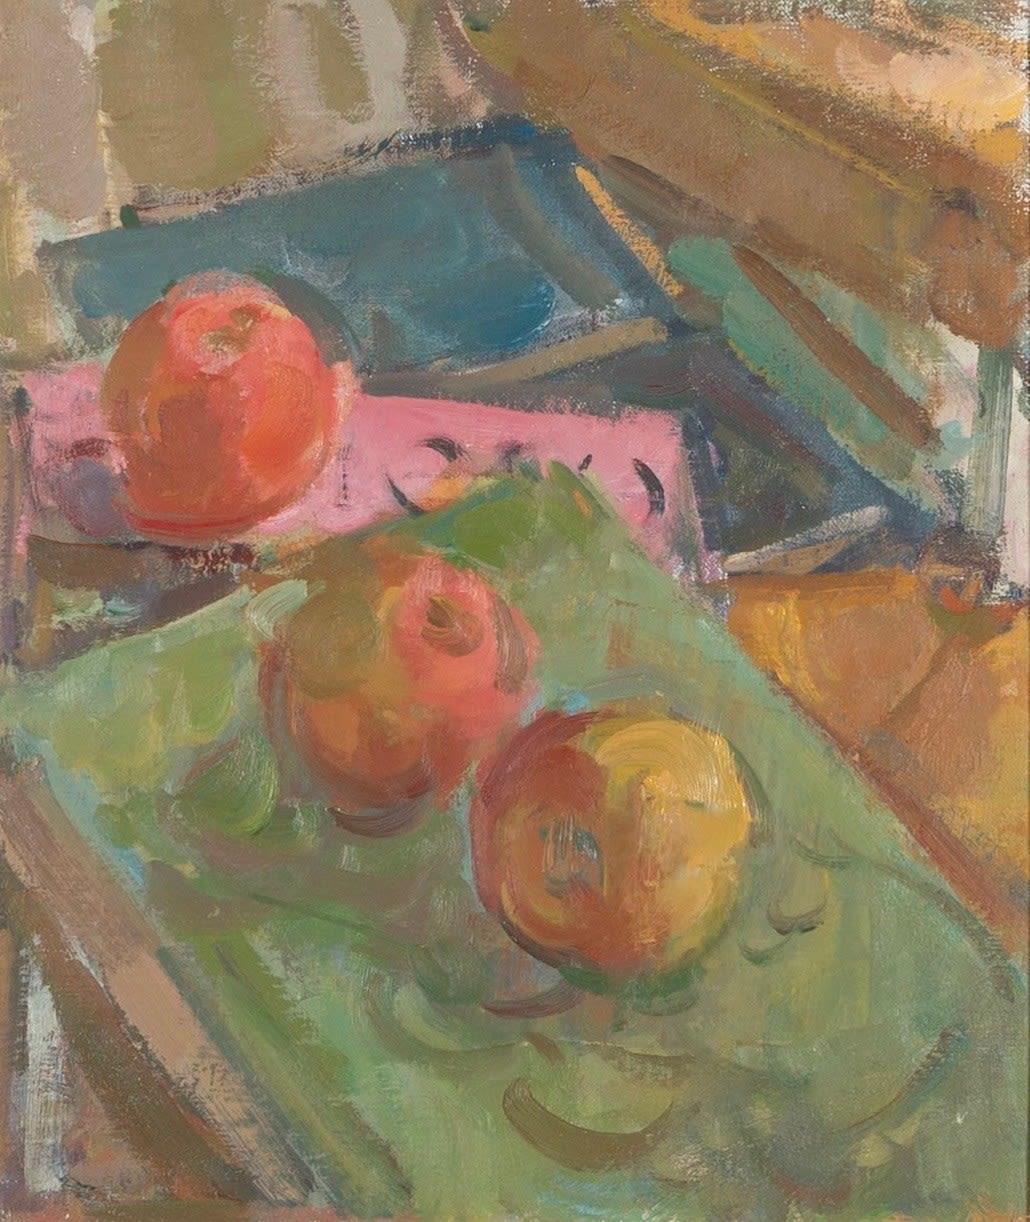 Stilleben, Äpfel und Bücher Gemälde von Martin Yeoman B. 1953, 2023

Zusätzliche Informationen:
Medium: Öl auf Leinwand
Abmessungen: 34 x 29 cm
13 3/8 x 11 3/8 in

Martin Yeoman wurde 1953 geboren und studierte von 1975 bis 1979 bei Peter Greenham